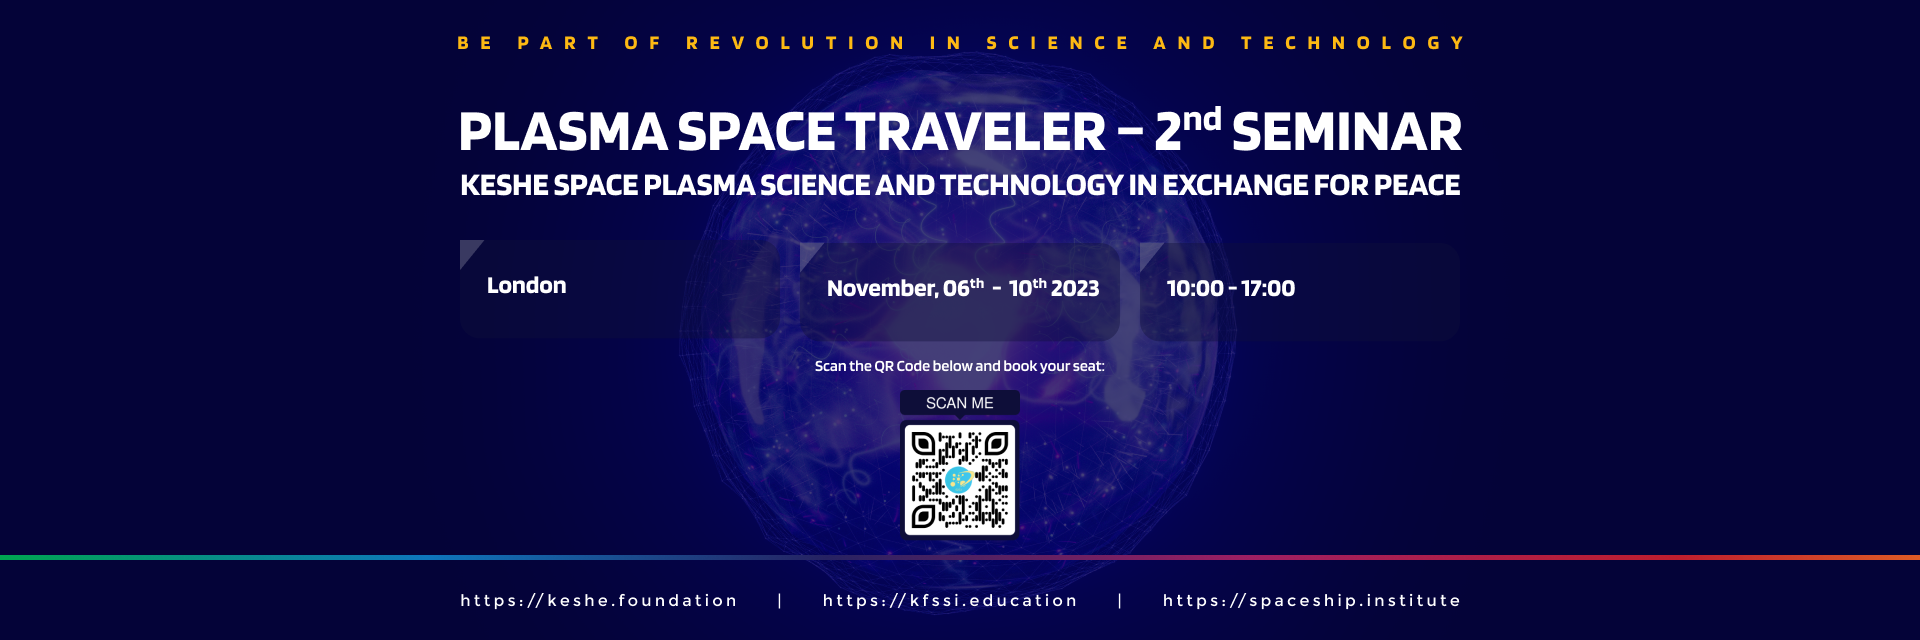 Plasma Space Traveler 3rd Seminar